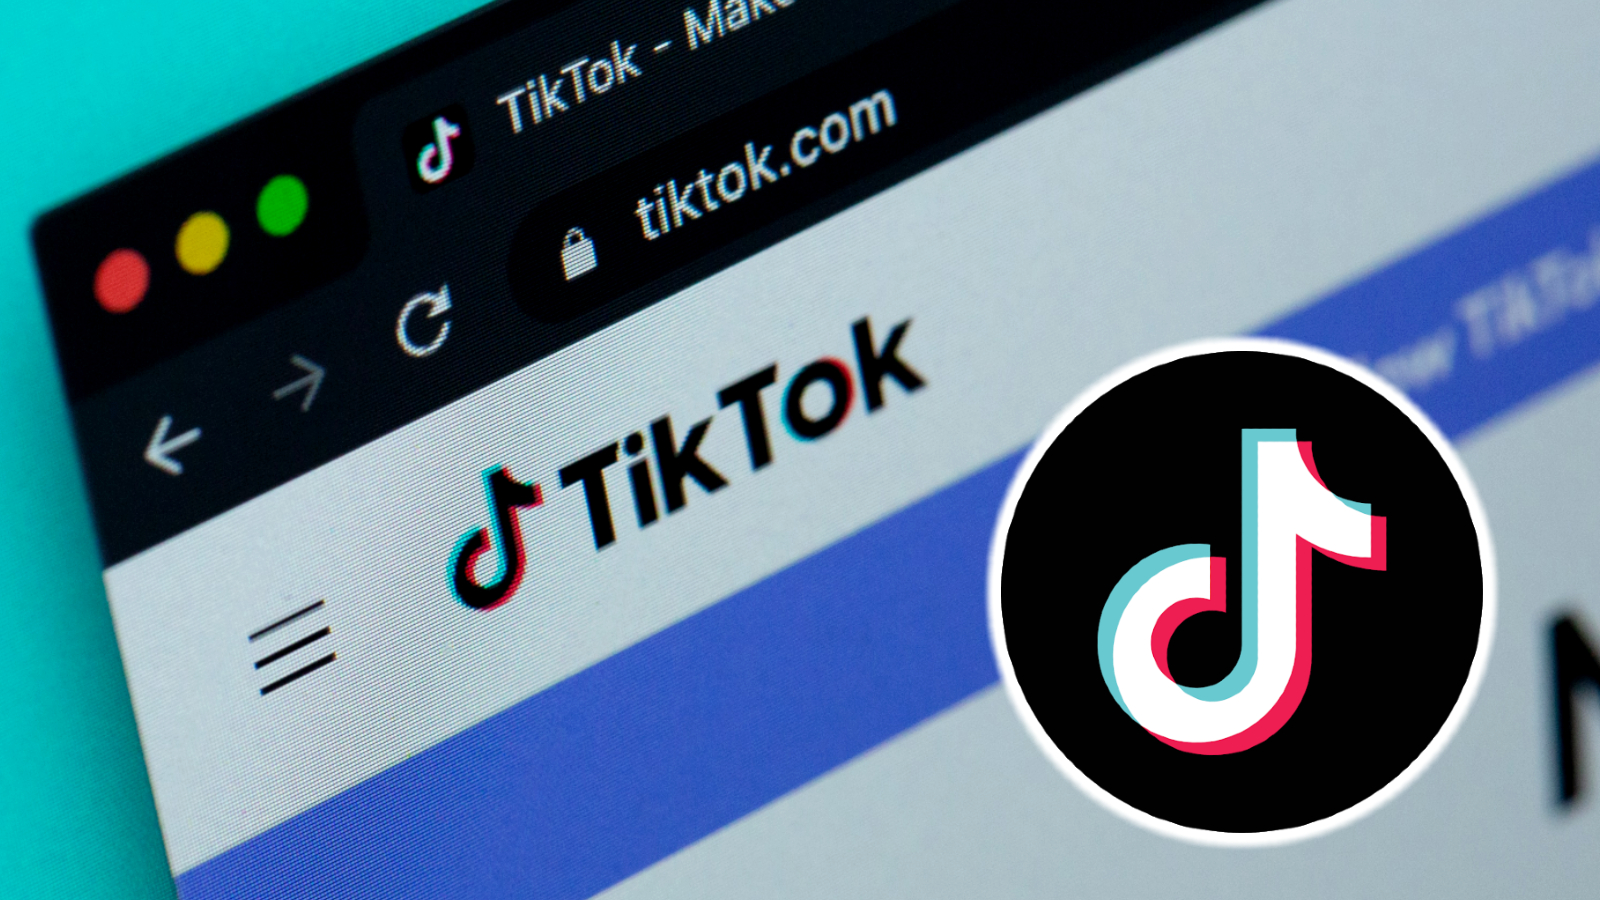 Sitio web de Tiktok al lado del logotipo de Tiktok